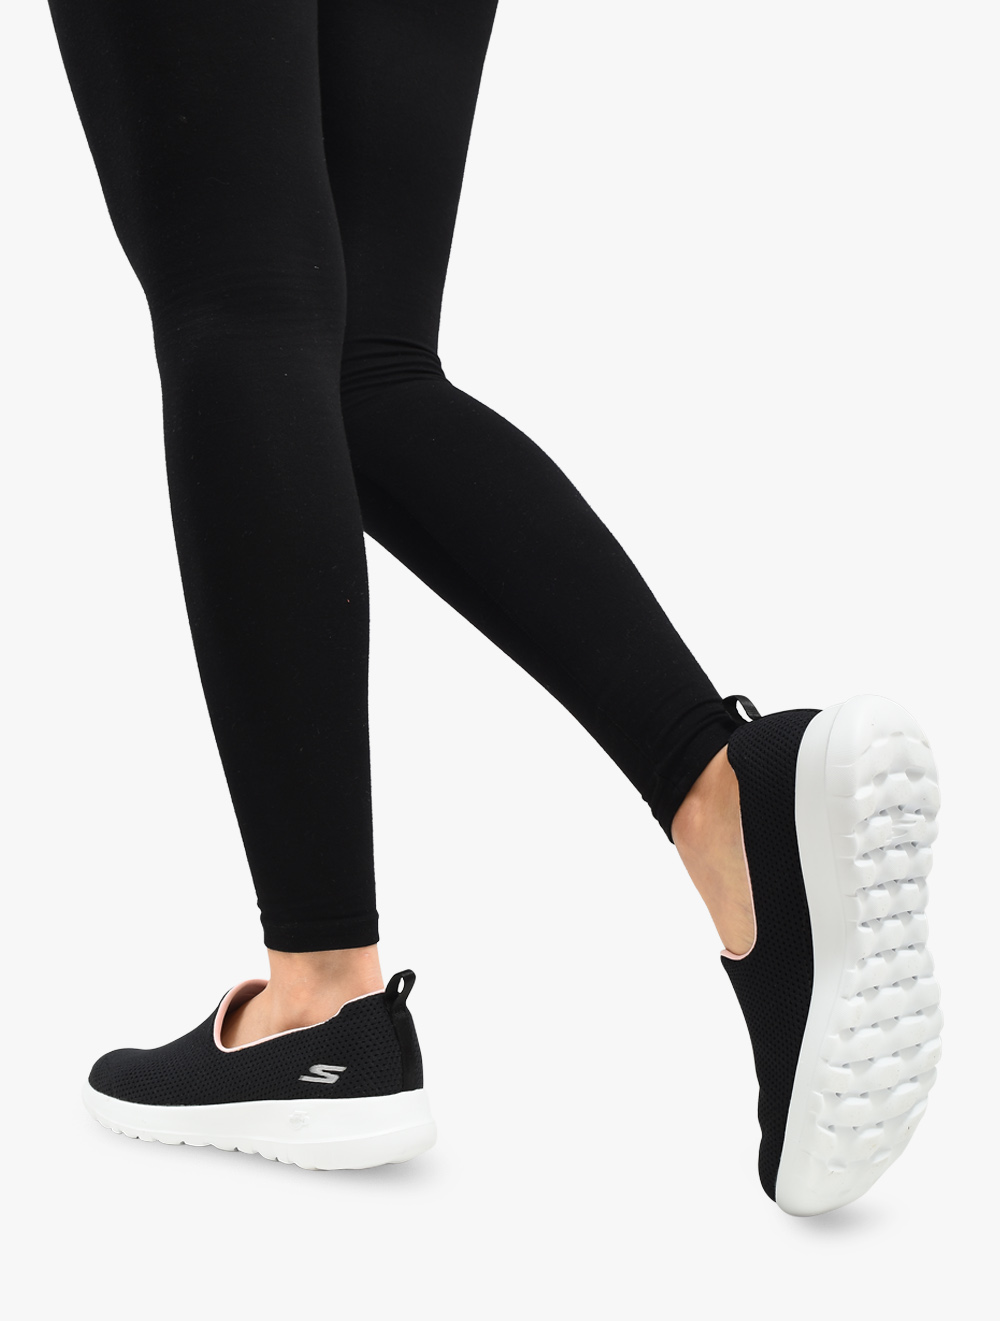 skechers women's gowalk joy casual walking sneakers